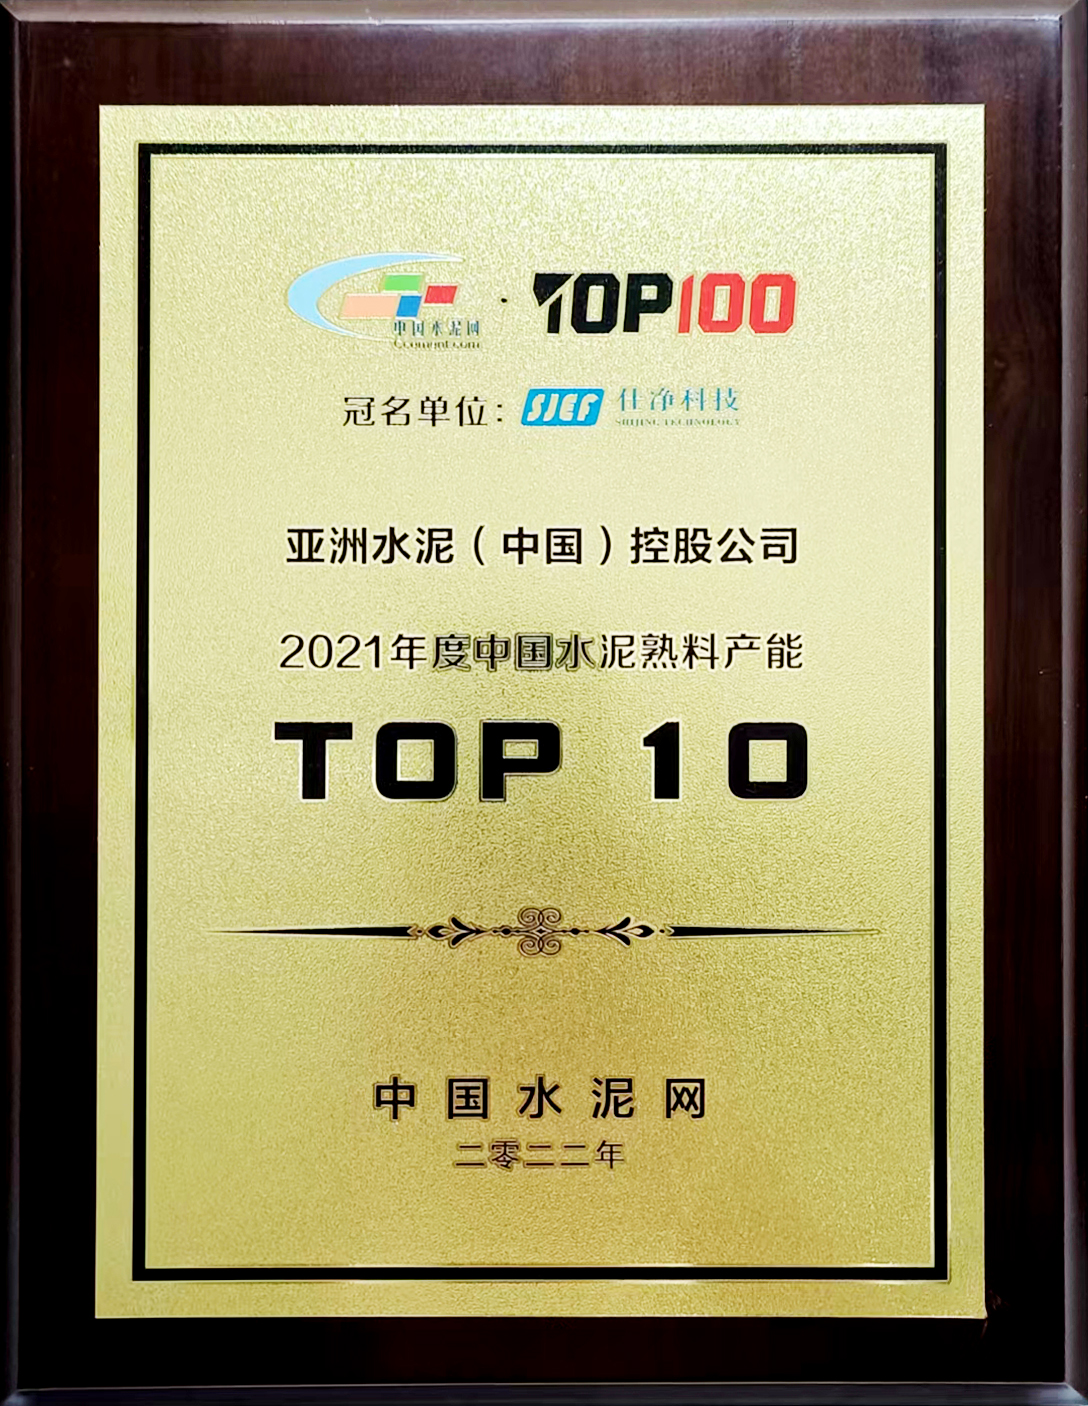 2022年7月11-12日，中国水泥网在杭州举办“2022年中国水泥产业峰会TOP100颁奖典礼”，公布亚洲水泥（中国）控股公司荣获“2021年度中国水泥熟料产能TOP 10”排名。